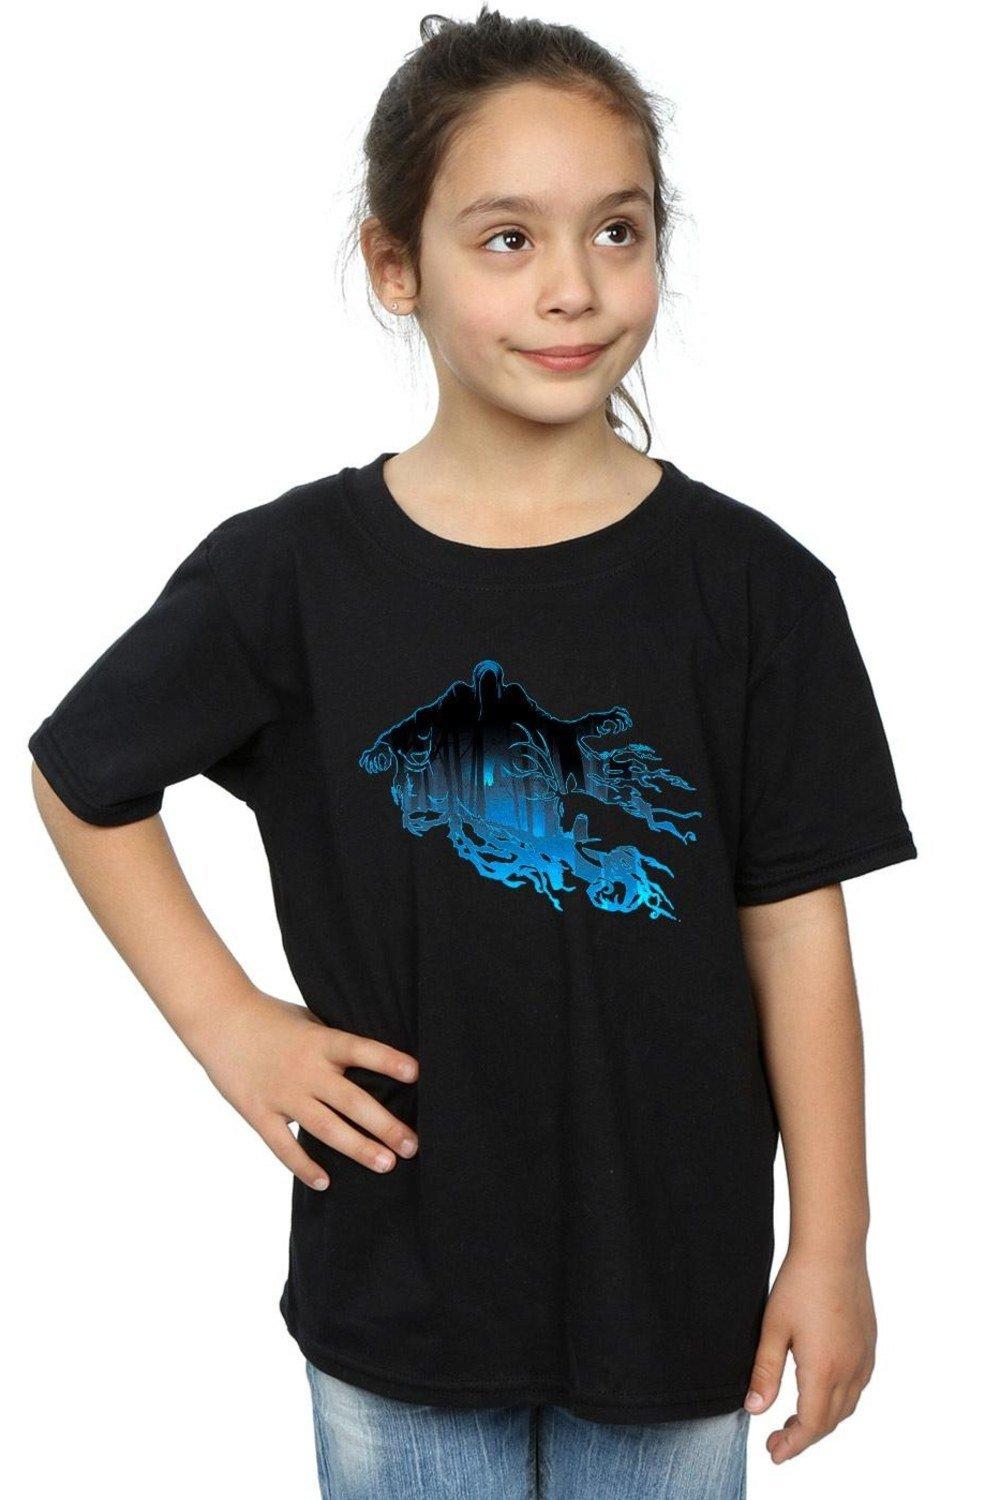 Dementor Silhouette Cotton T-Shirt